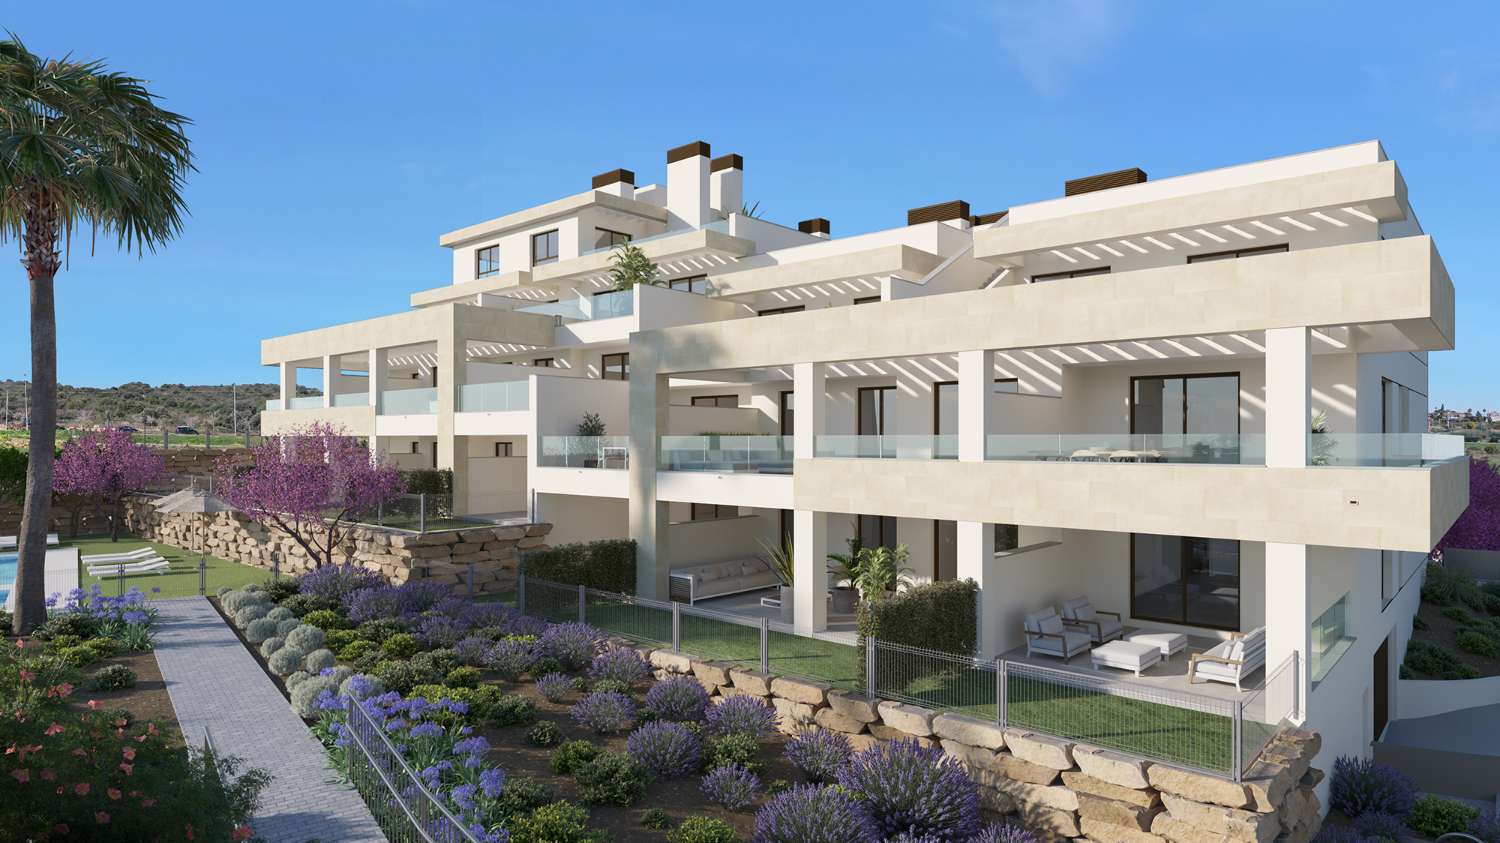 Nouvel appartement avec jardin privé à Estepona - Costa del Sol